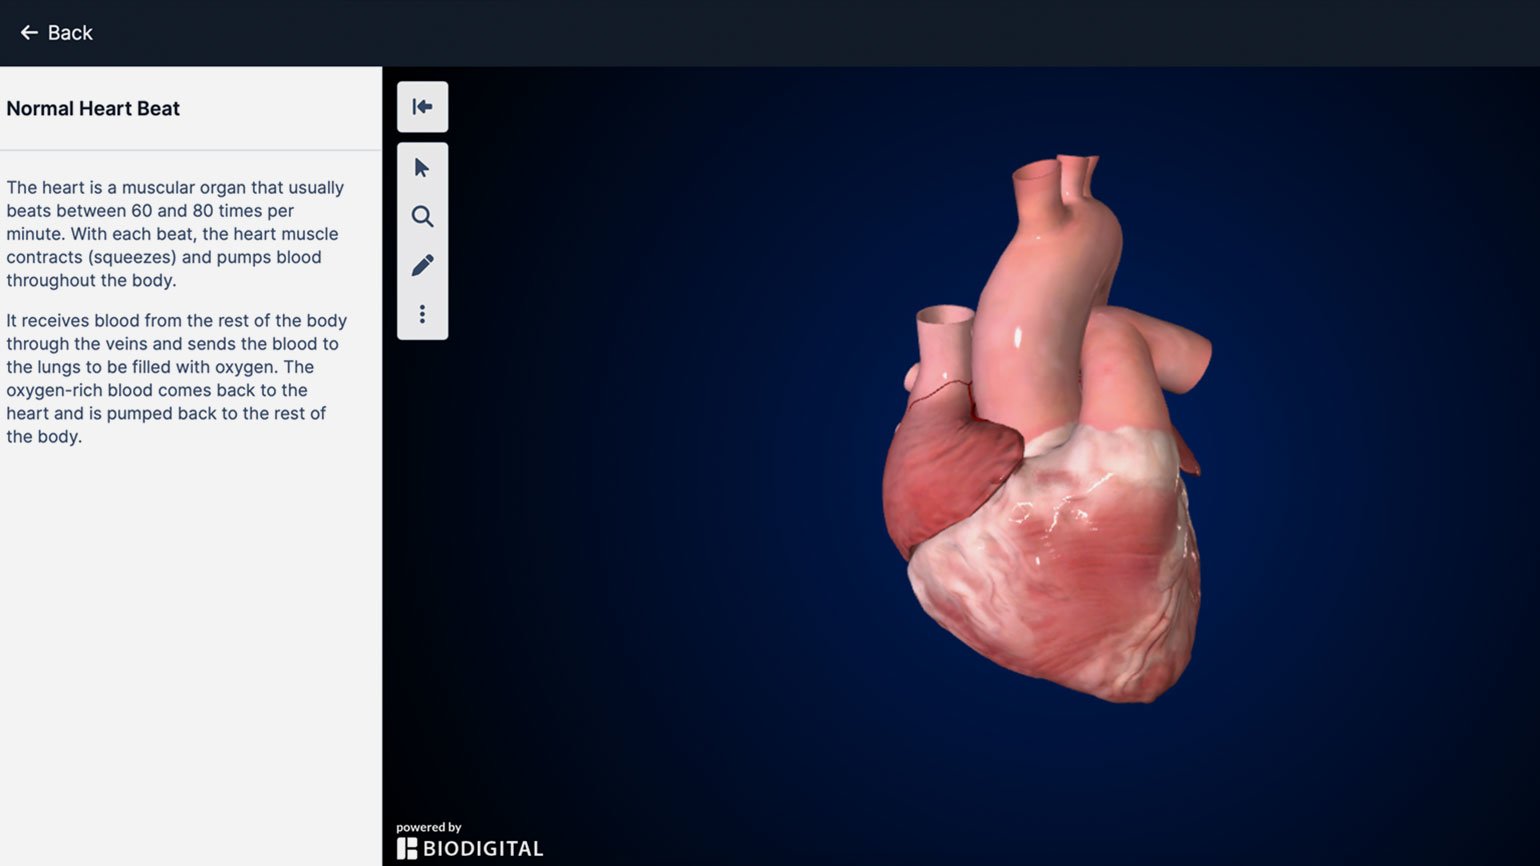 Референс анатомического строения человеческого тела в 3D